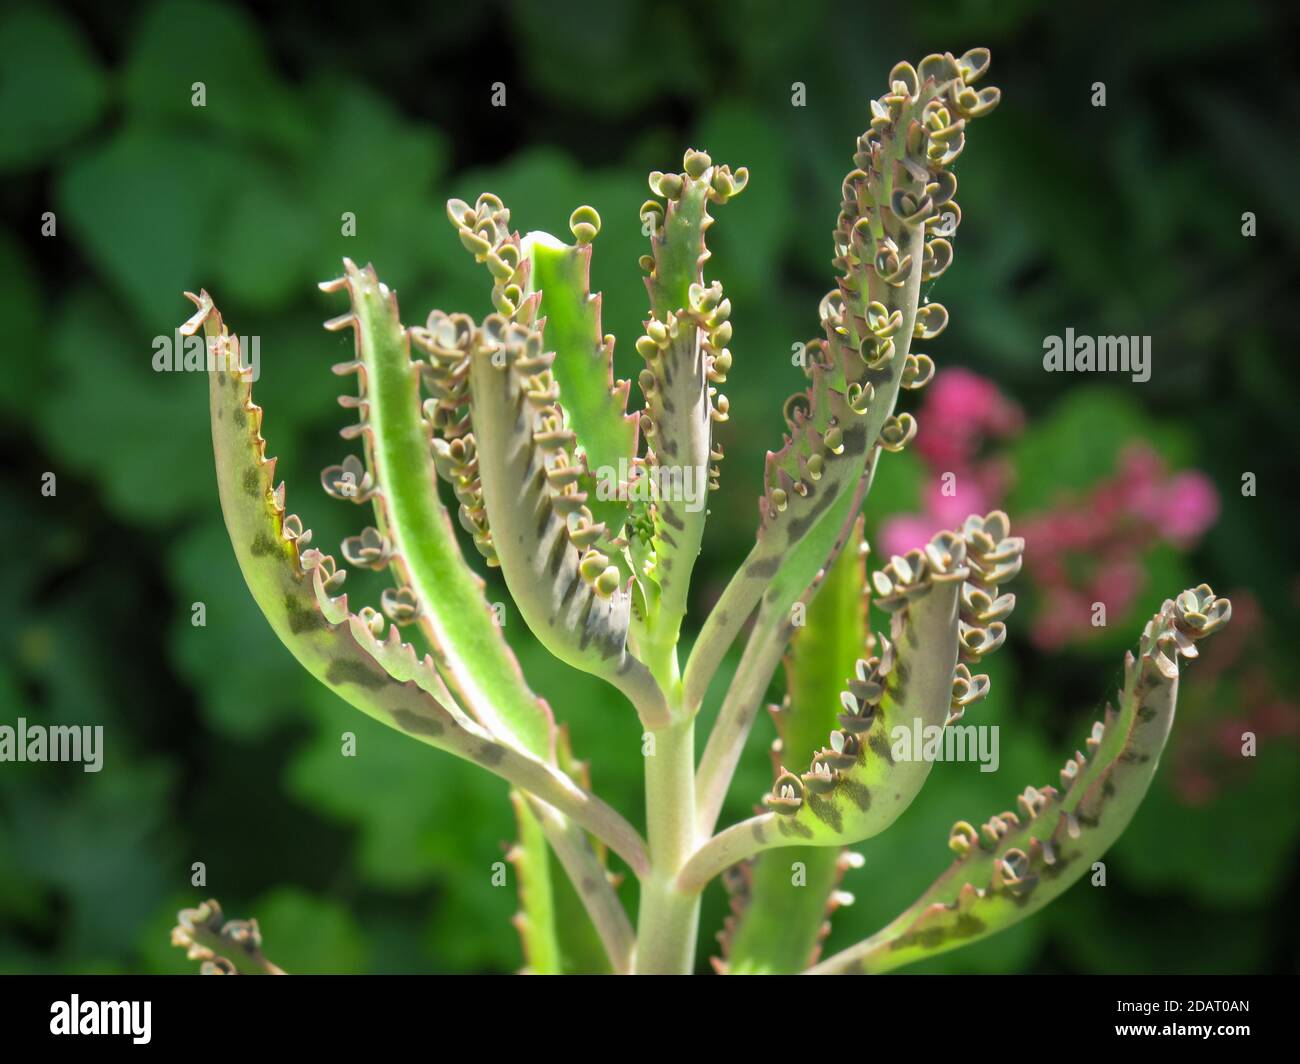 Close up of Bryophyllum flower in garden. Bryophyllum on blurred background. Stock Photo